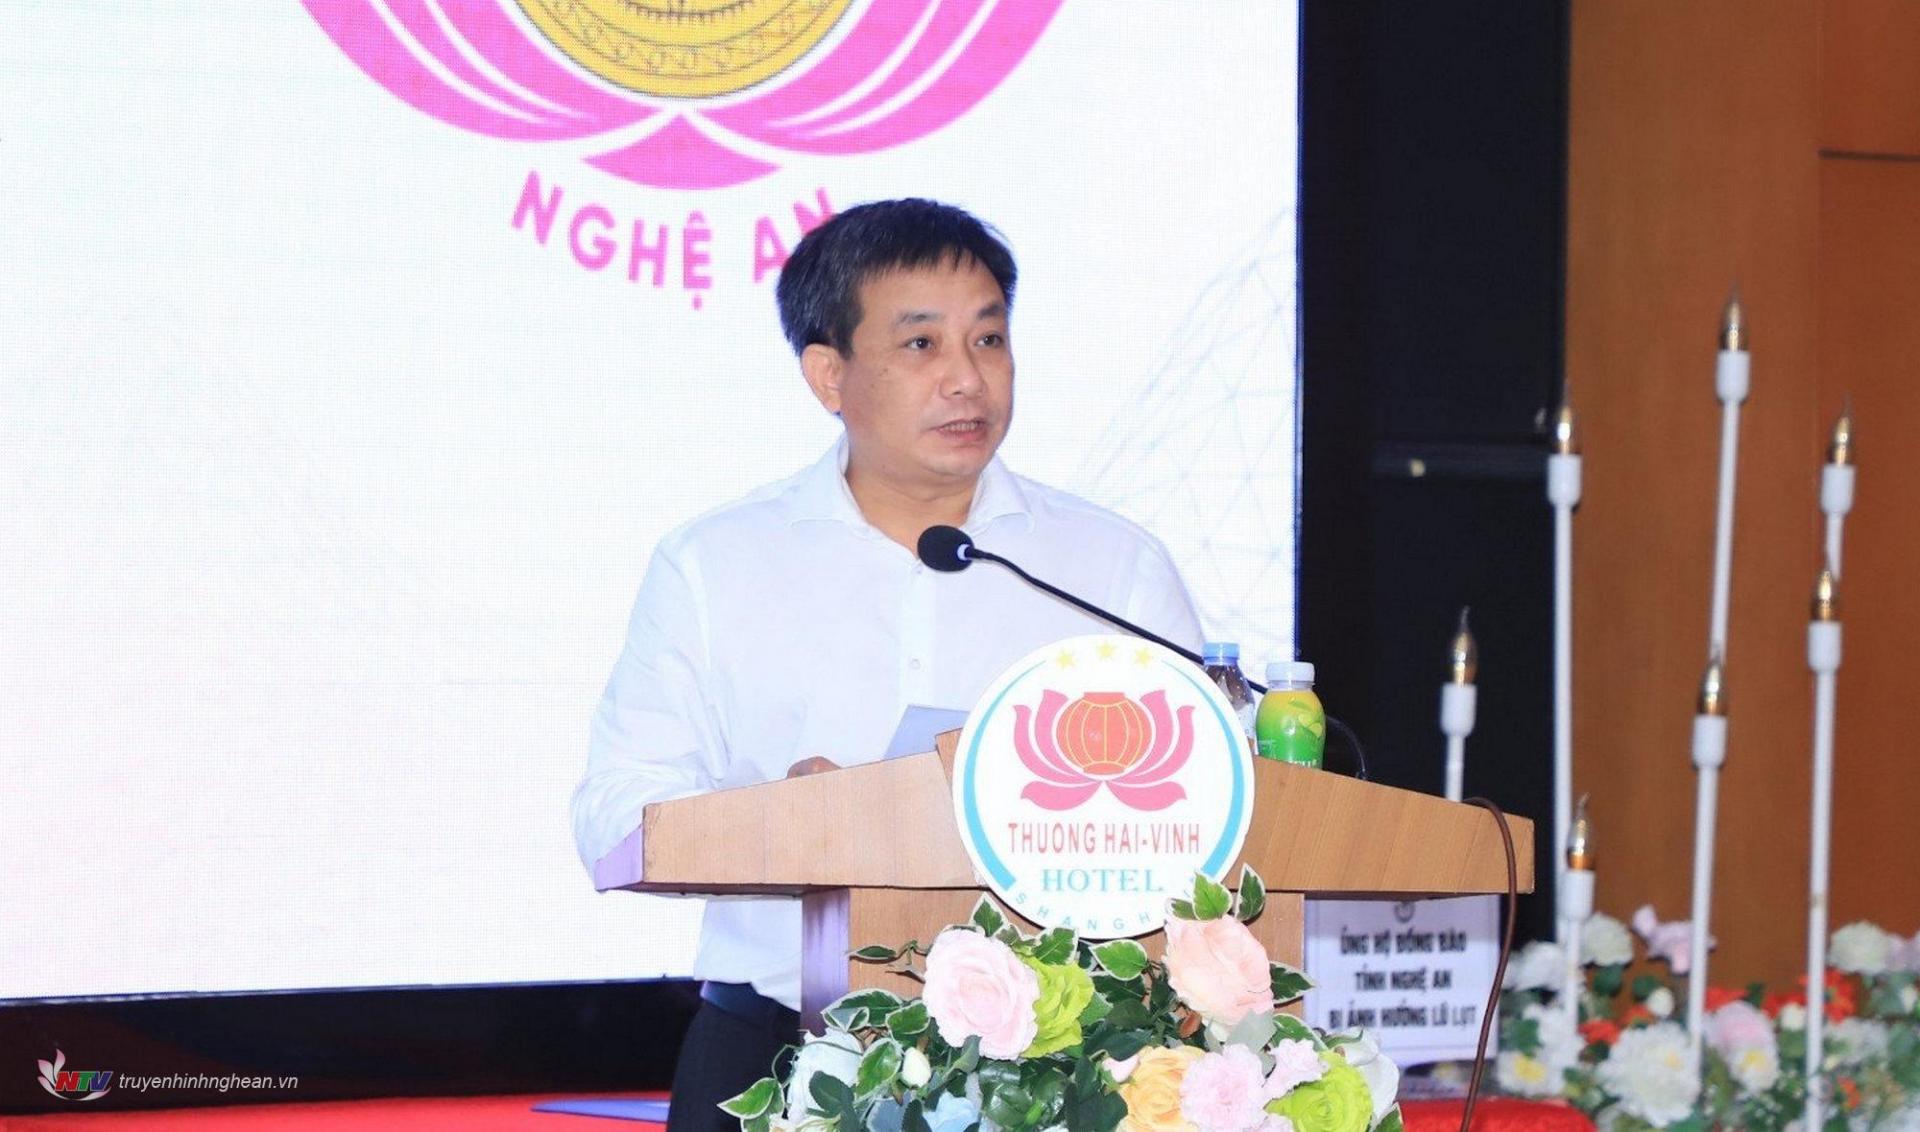 Đồng chí Phan Toàn Thắng, Chánh Văn phòng Hội Nhà báo Việt Nam báo cáo Tổng kết công tác hỗ trợ tác phẩm báo chí chất lượng cao khu vực miền Trung – Tây Nguyên năm 2022